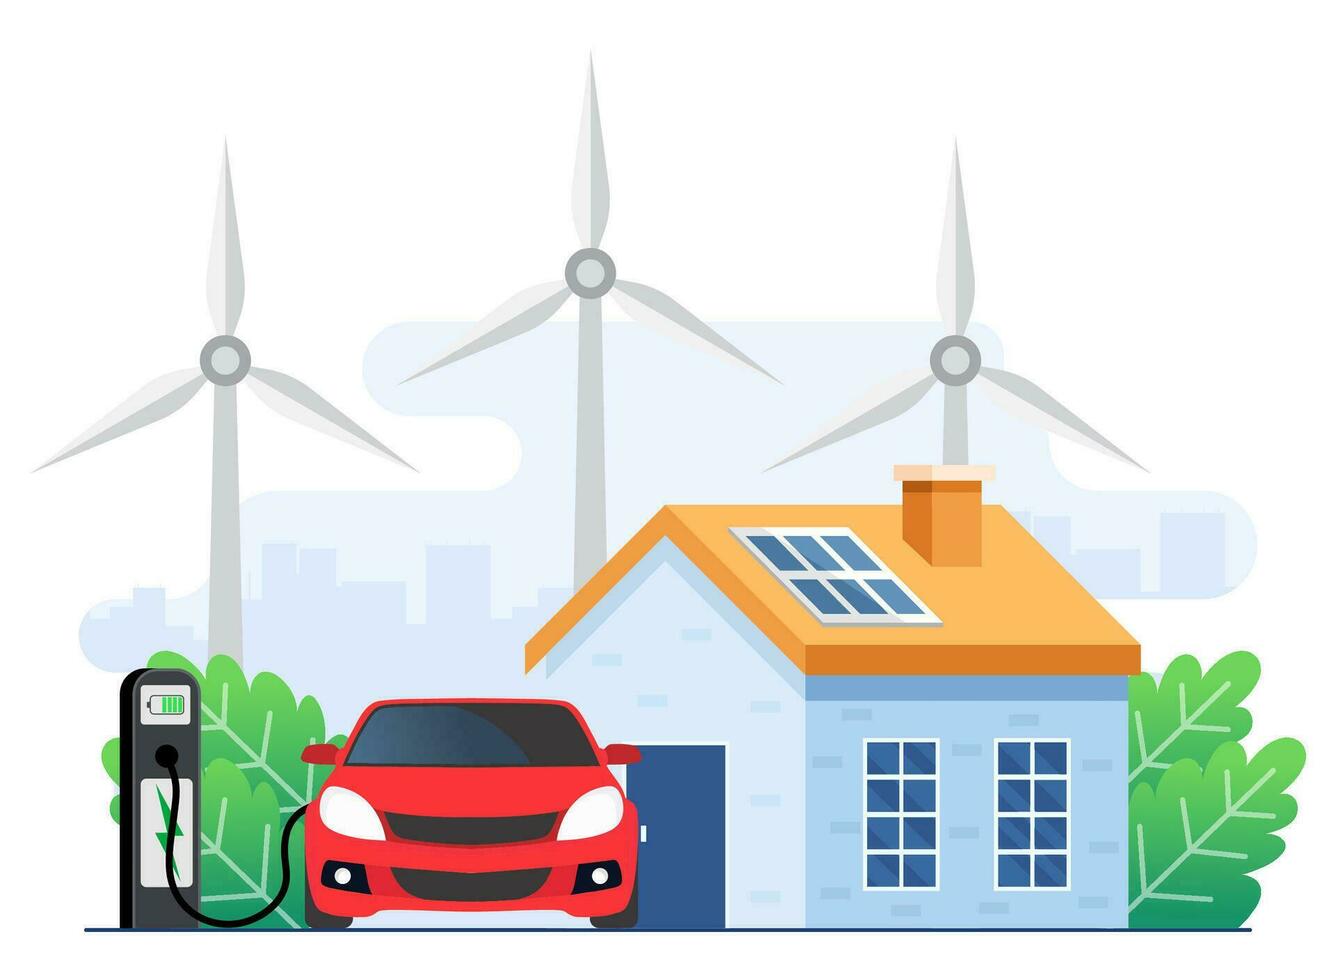 grön energi begrepp, landskap med modern hus, elektrisk bil avgift batteri i laddning station, solenergi paneler och vind turbiner, energi effektiv hus, förnybar energi, ekologi, alternativ energi vektor